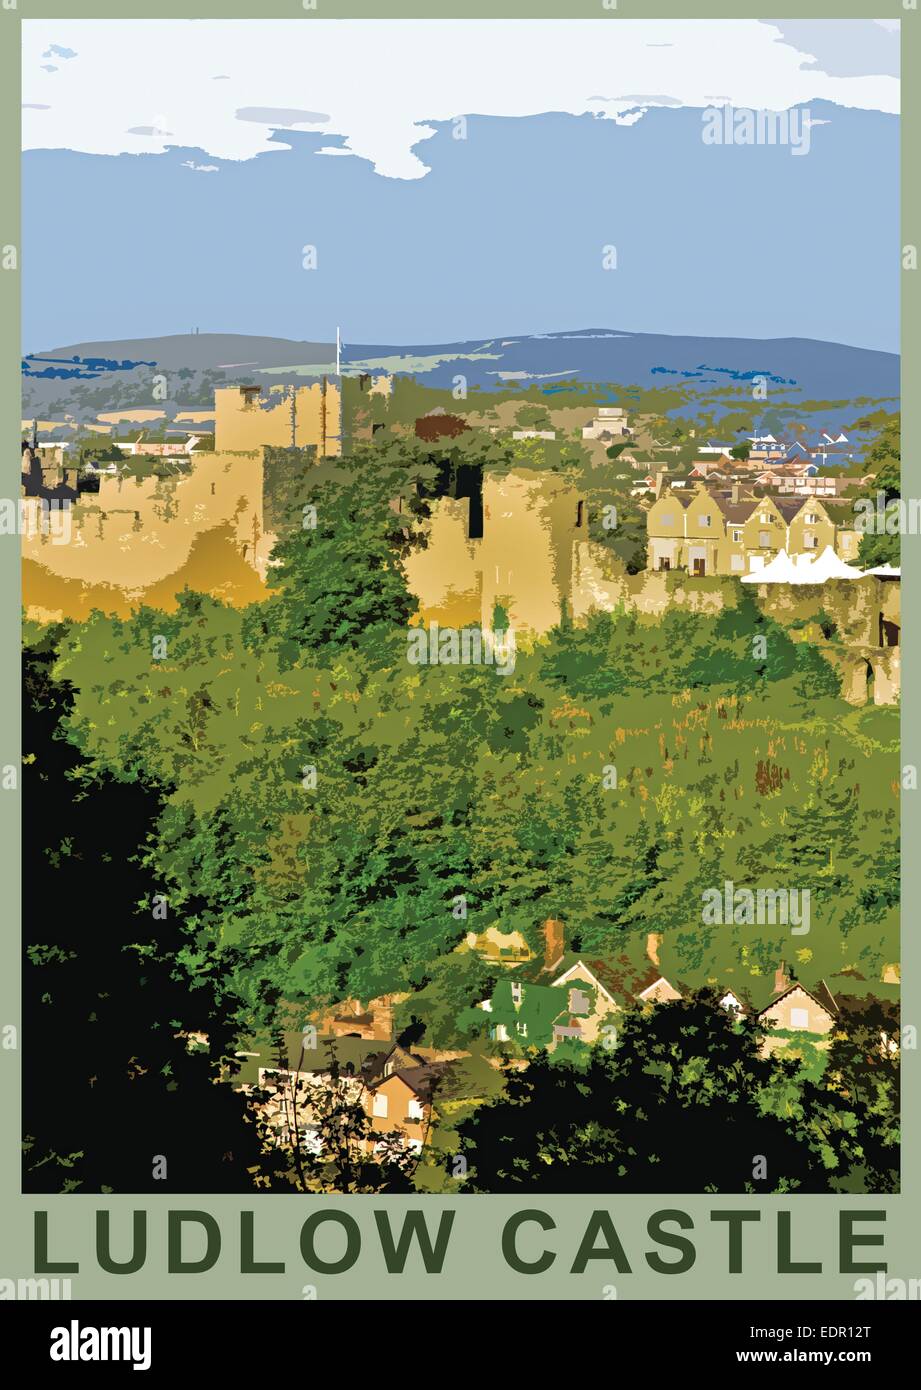 Ein Plakat Stil Abbildung von Ludlow Castle, Ludlow, Shropshire, England, UK Stockfoto